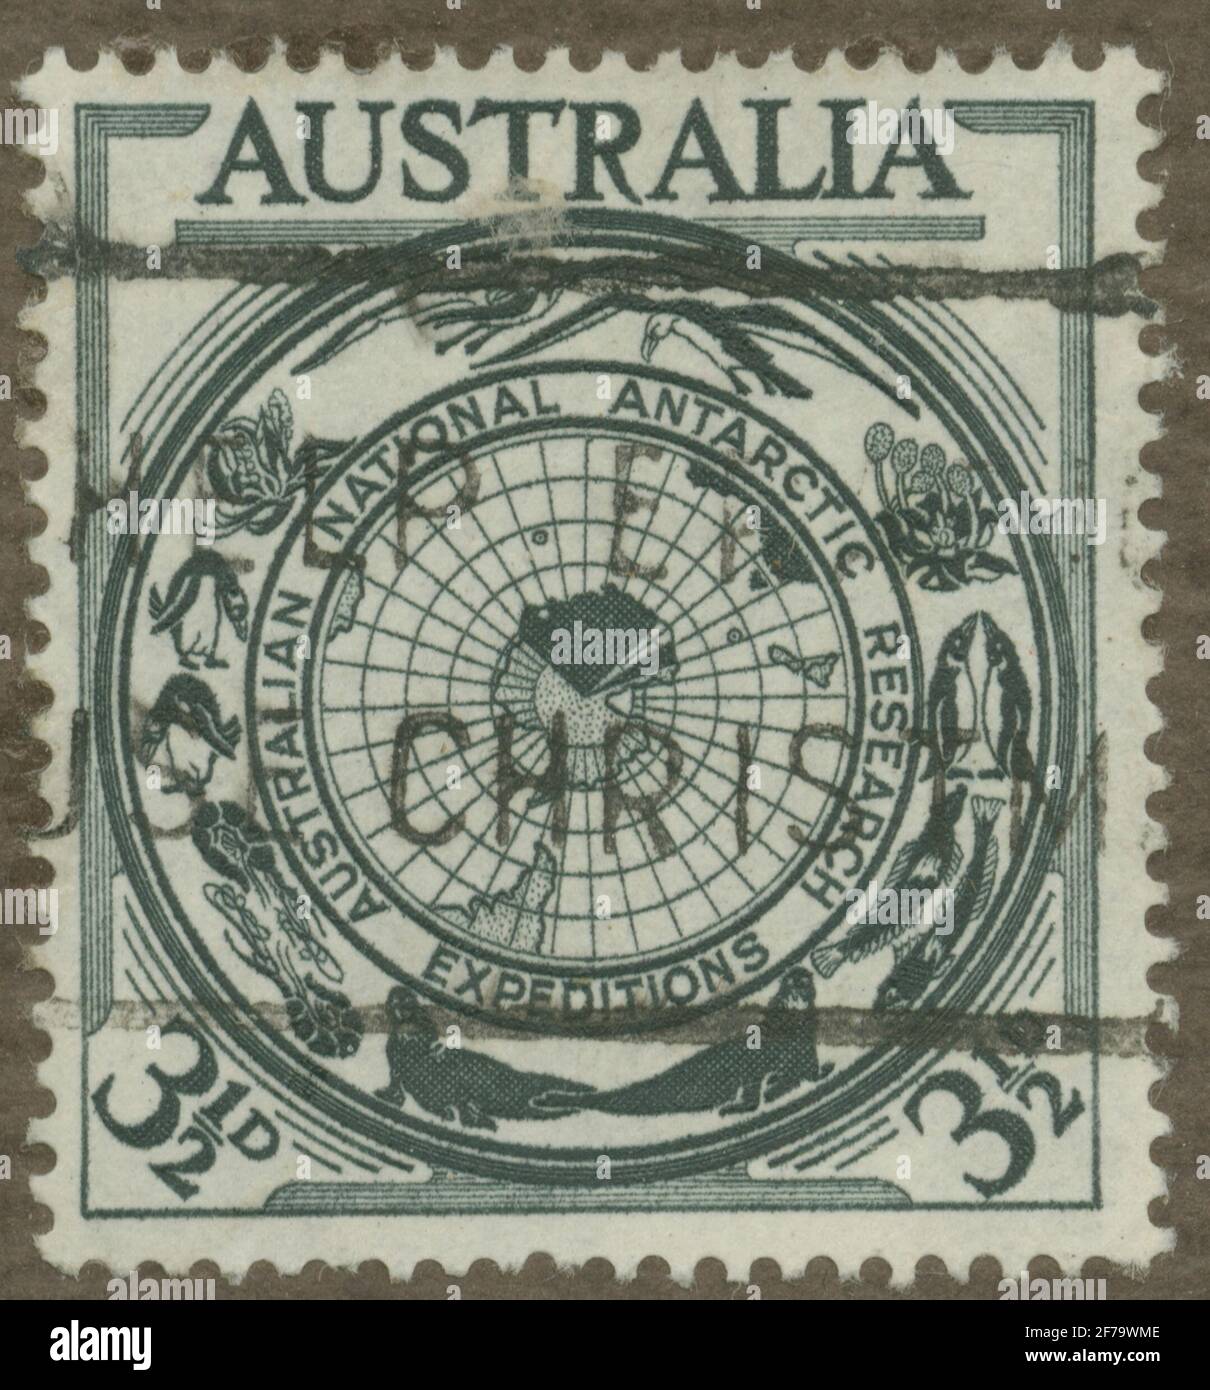 Stempel von Gösta Bodmans Philatelistenauftrag, begann 1950, die Briefmarke aus Australien, 1954. Karte des antarktischen Gebiets mit den australischen Anforderungen vor Ort. „Serie aus antarktischer Flora und Fauna“. Stockfoto